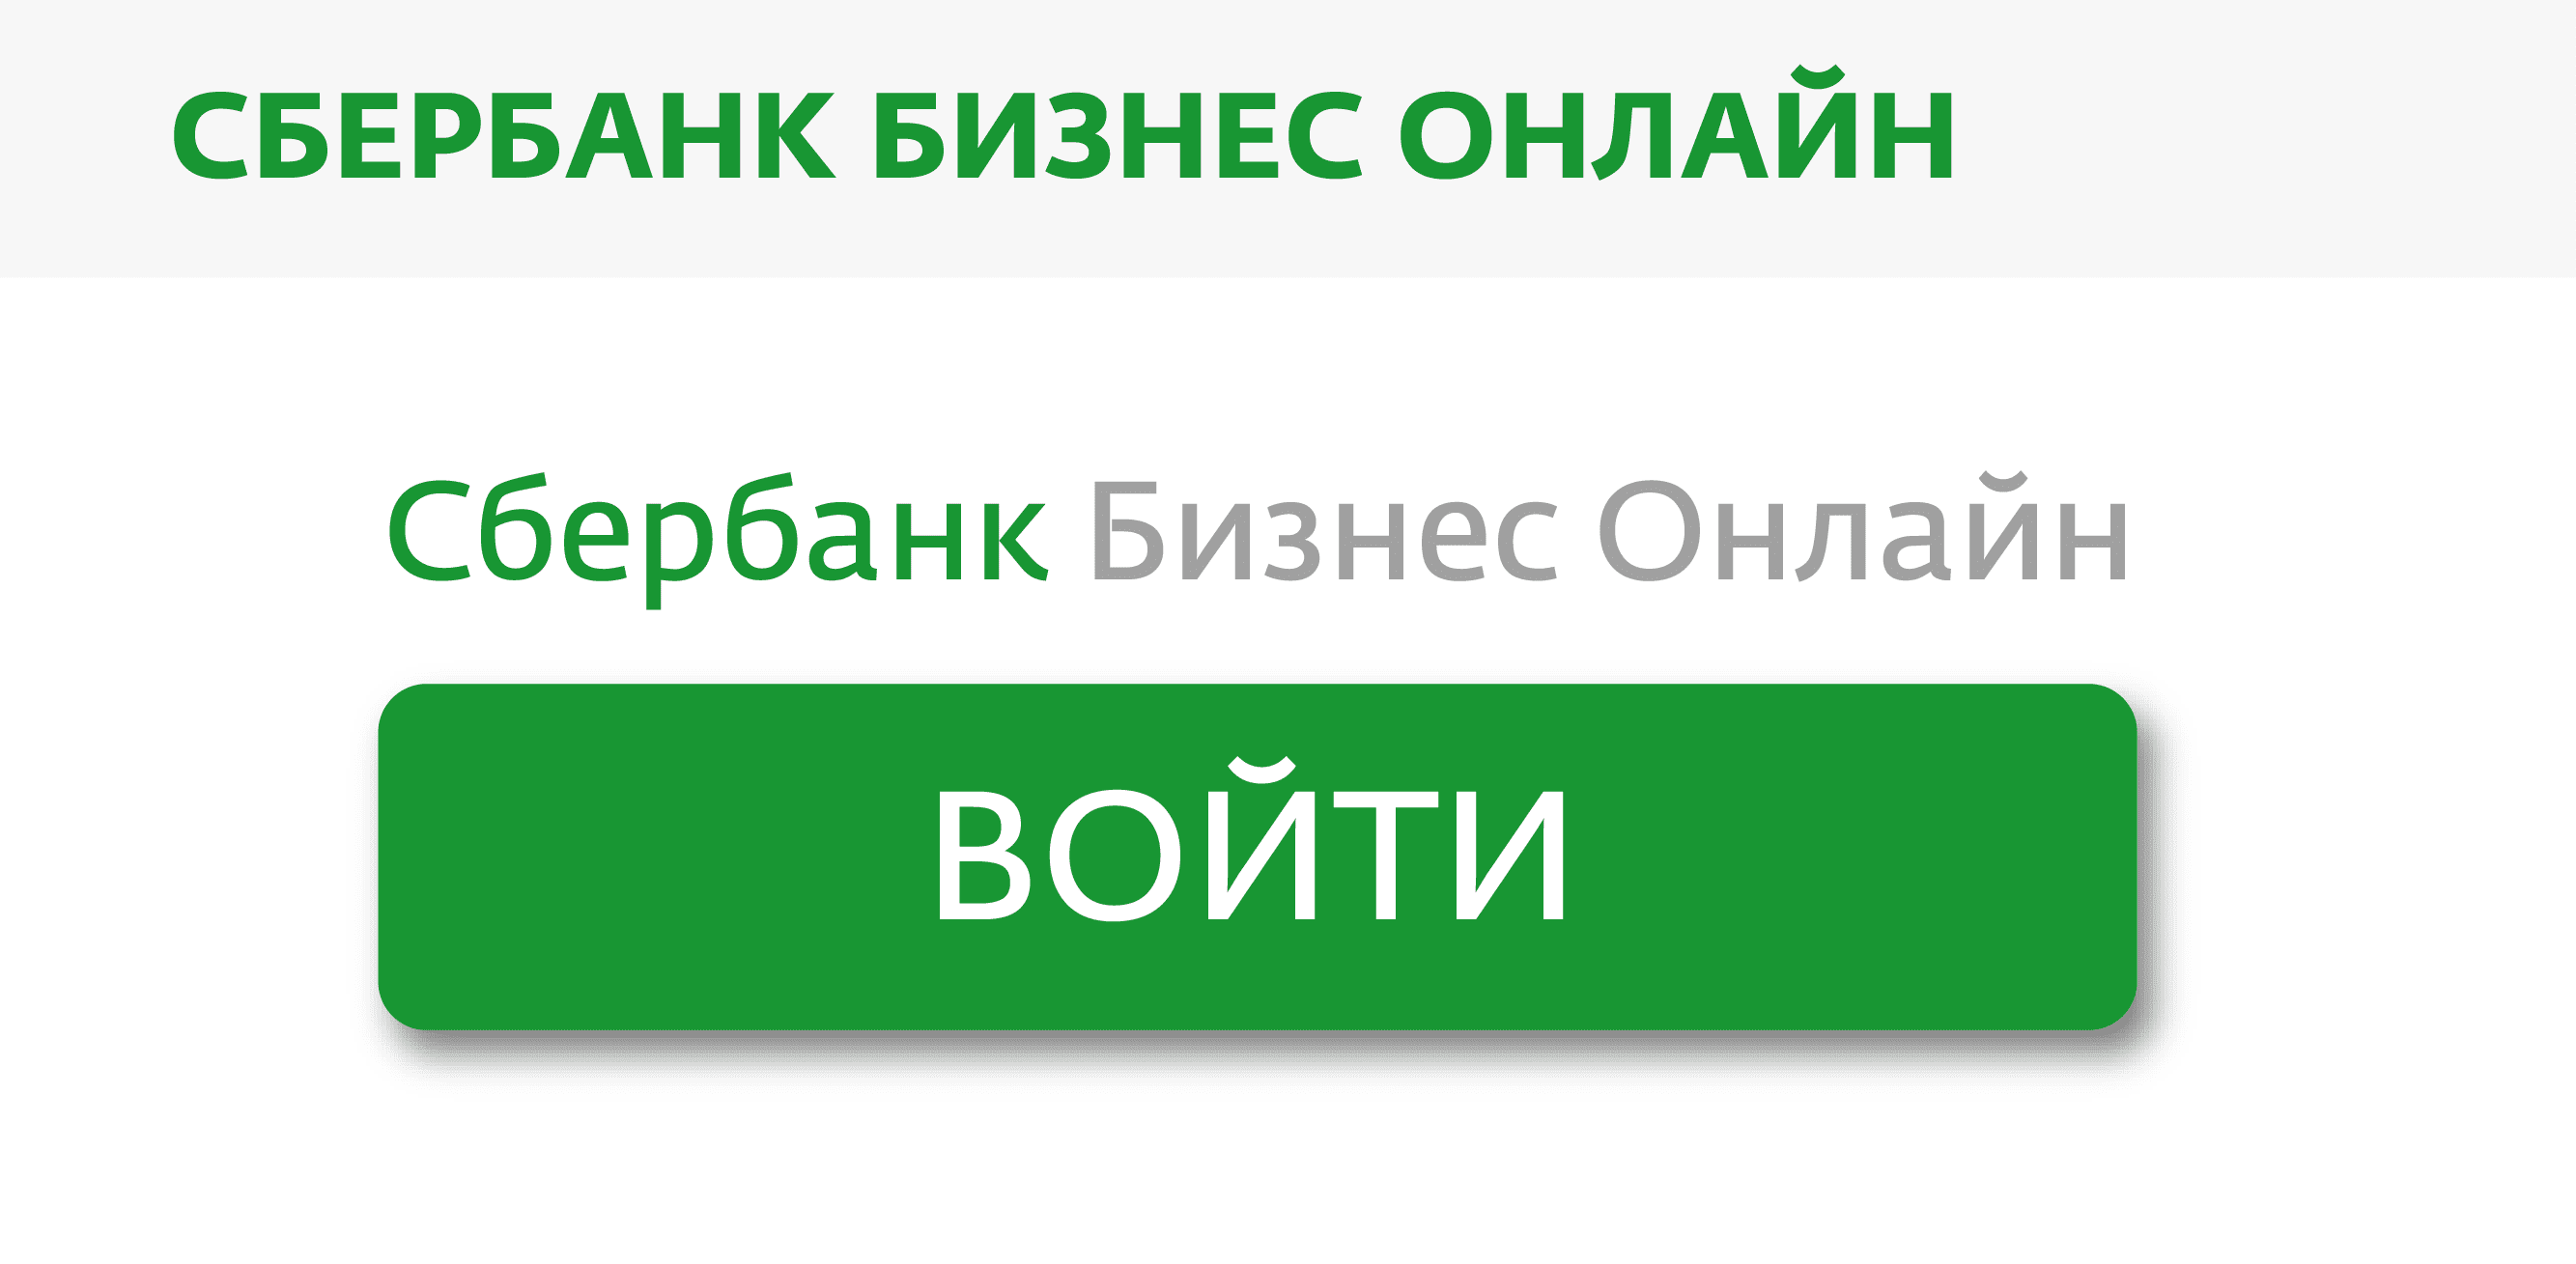 Sbrf ru сбербанк онлайн малому бизнесу летуаль франшиза в маленьком городе